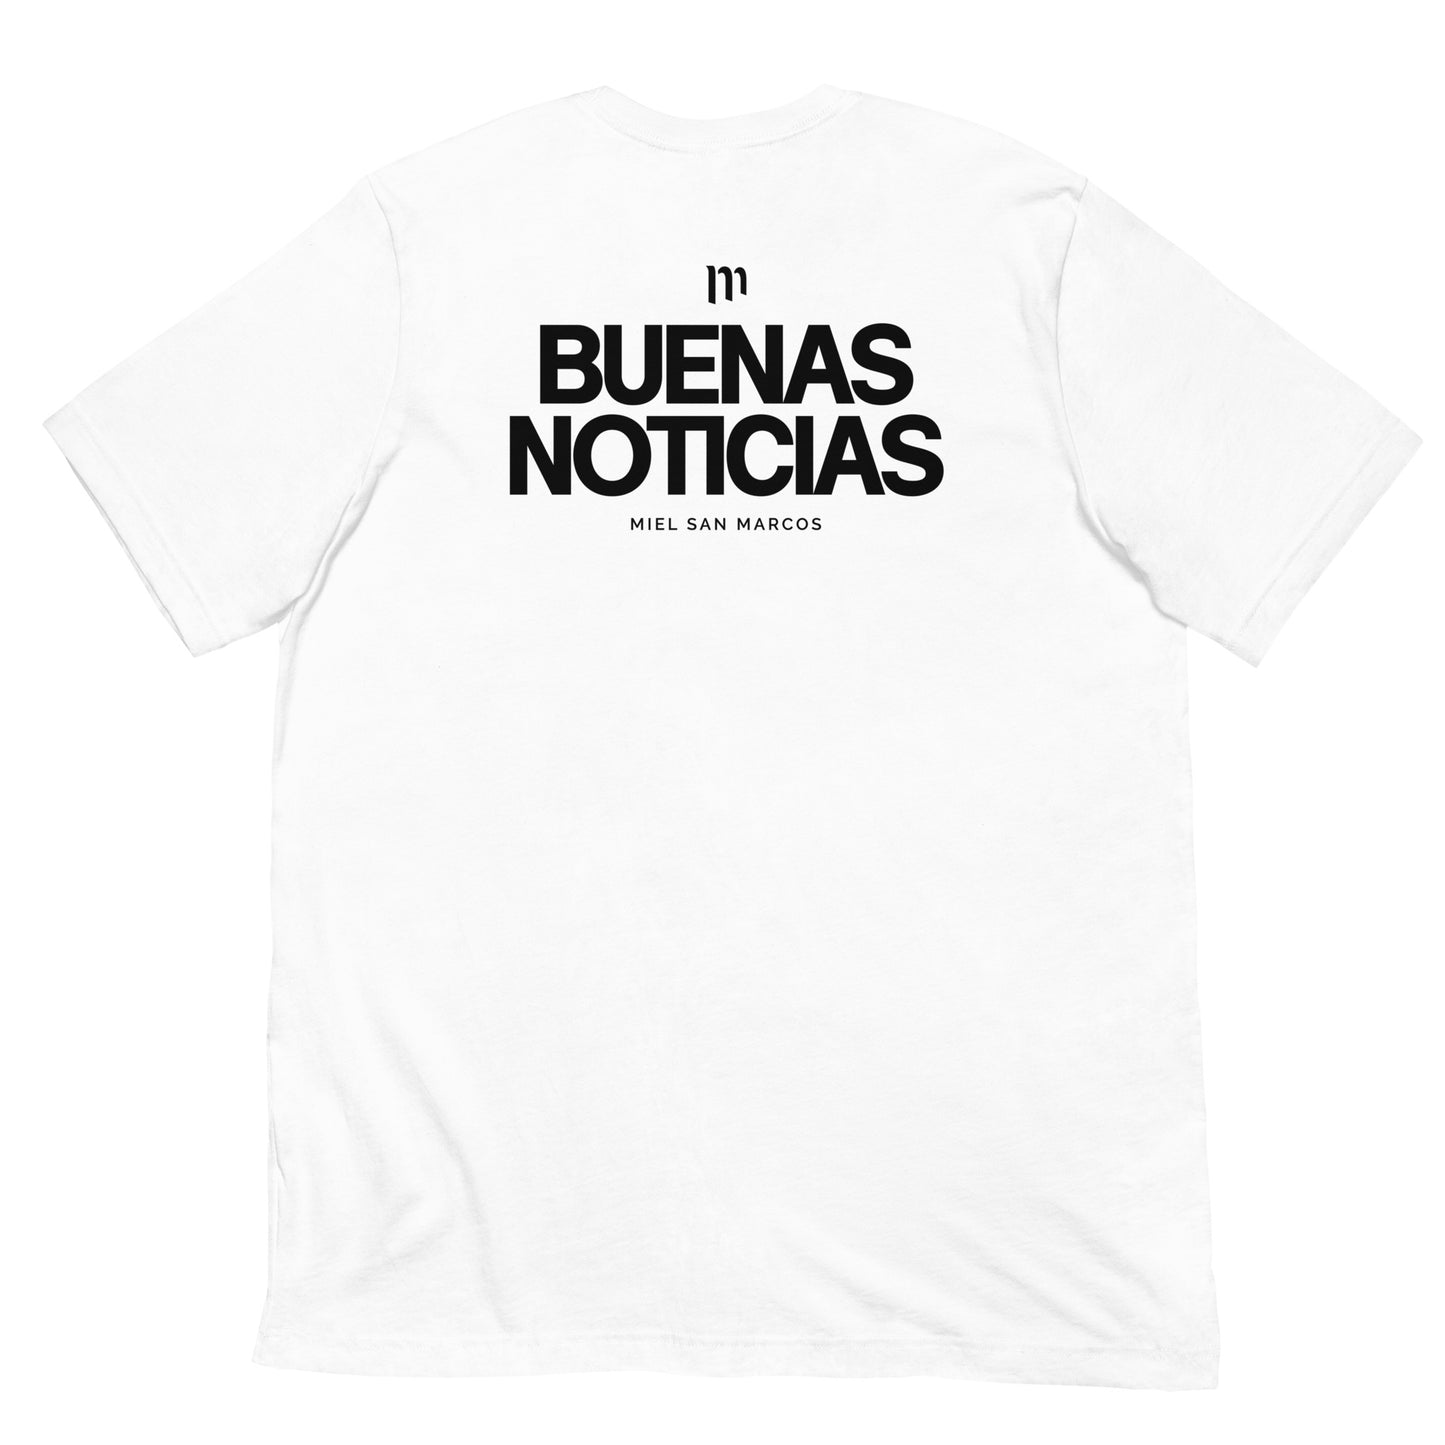 BUENAS NOTICIAS - Camiseta de manga corta Miel San Marcos